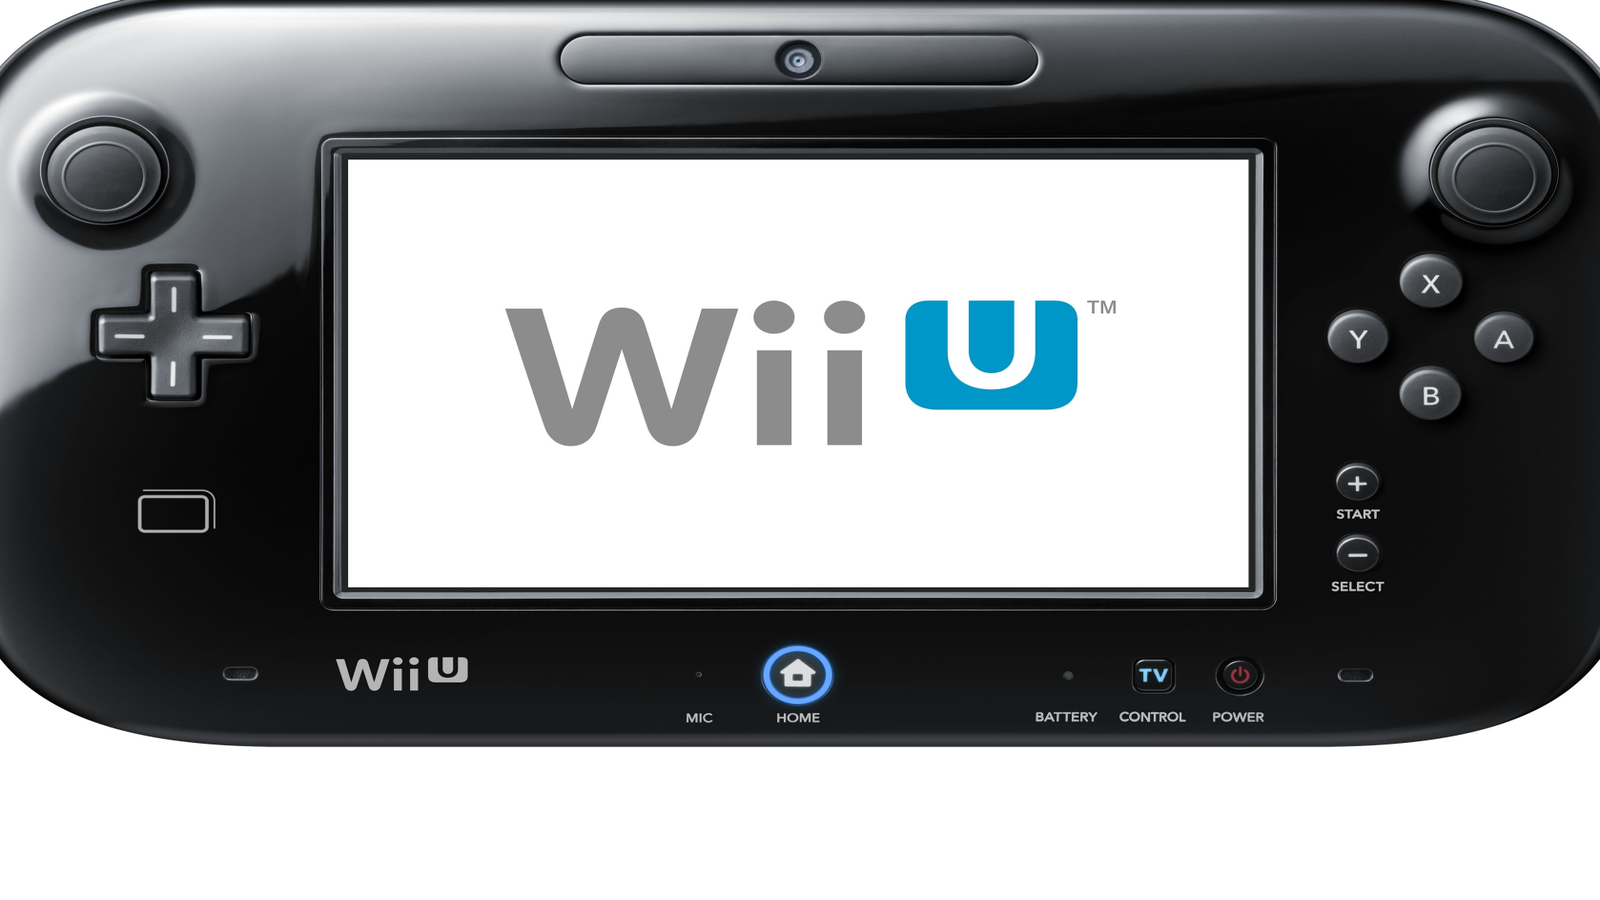 Die Wii U im Detail - 1. Das GamePad im Test